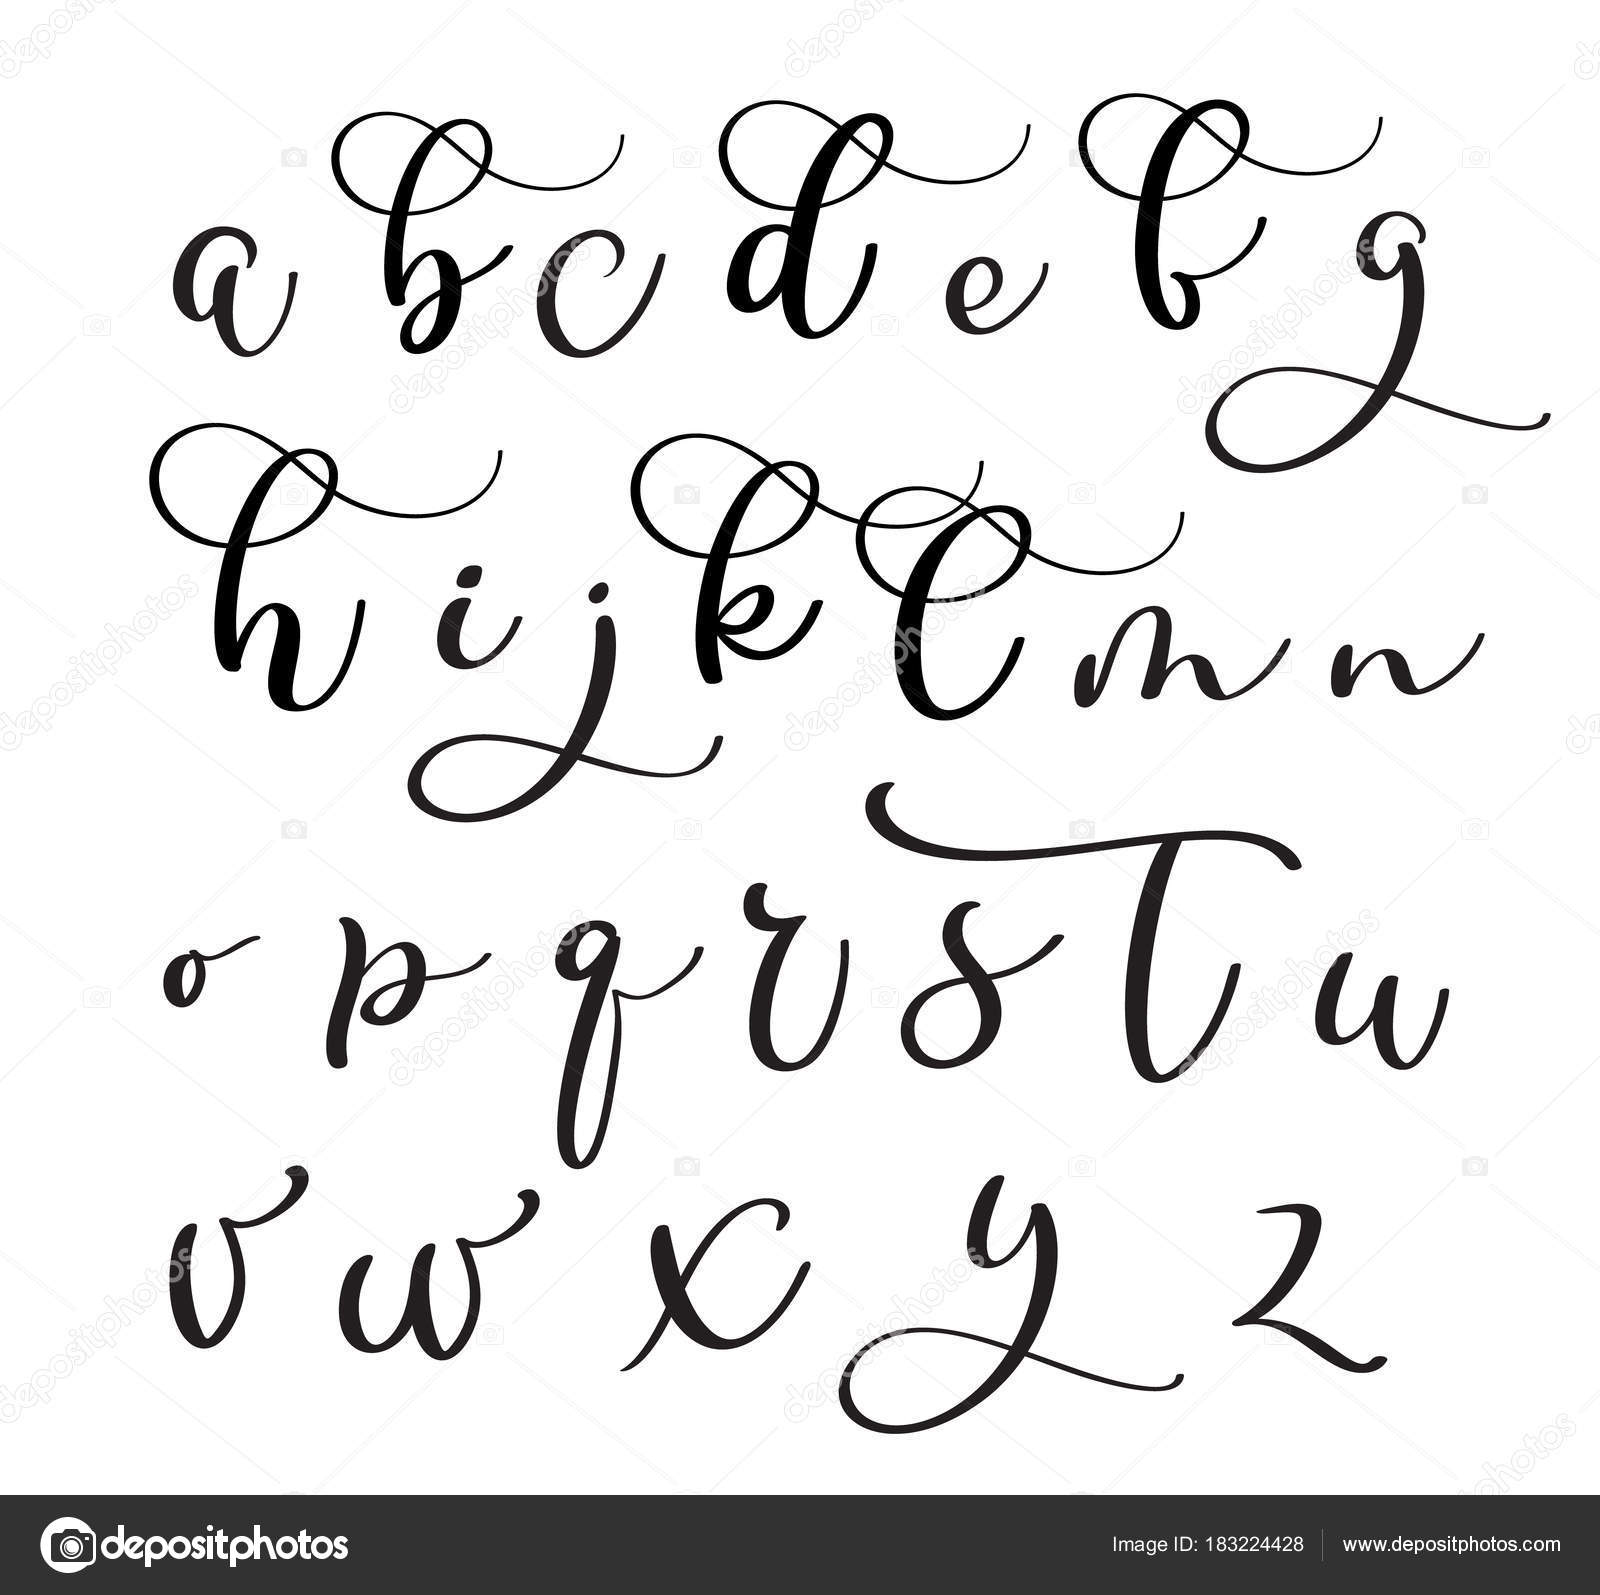 Font Établi Sur La Base De L'écriture Calligraphie, Brosse